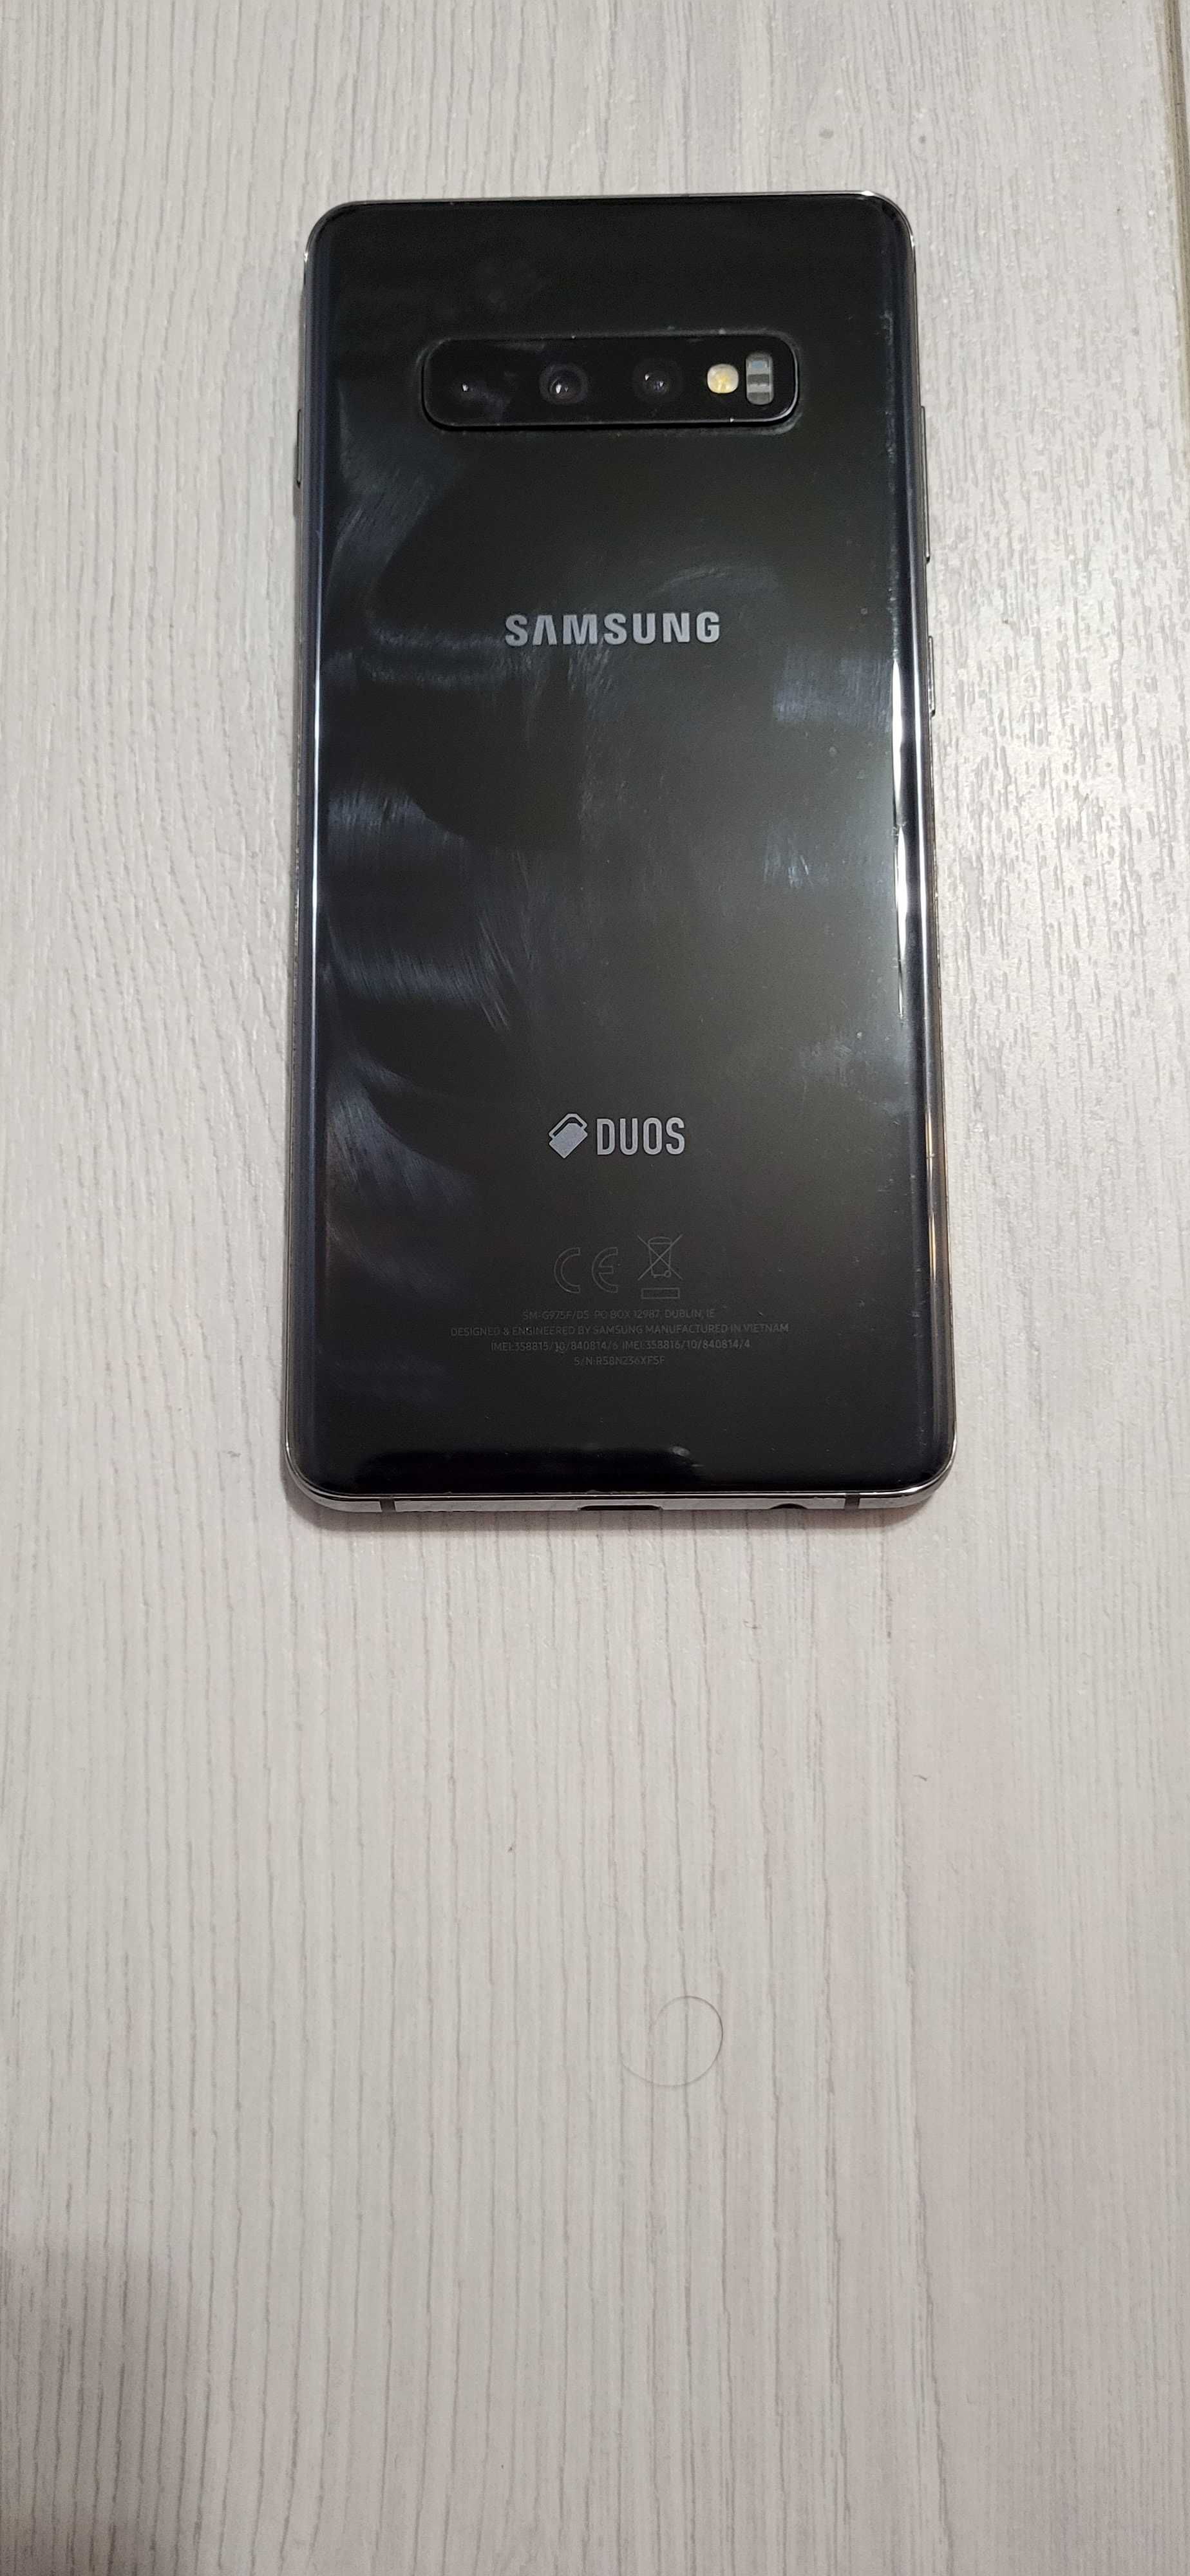 Samsung DUOS S10 plus